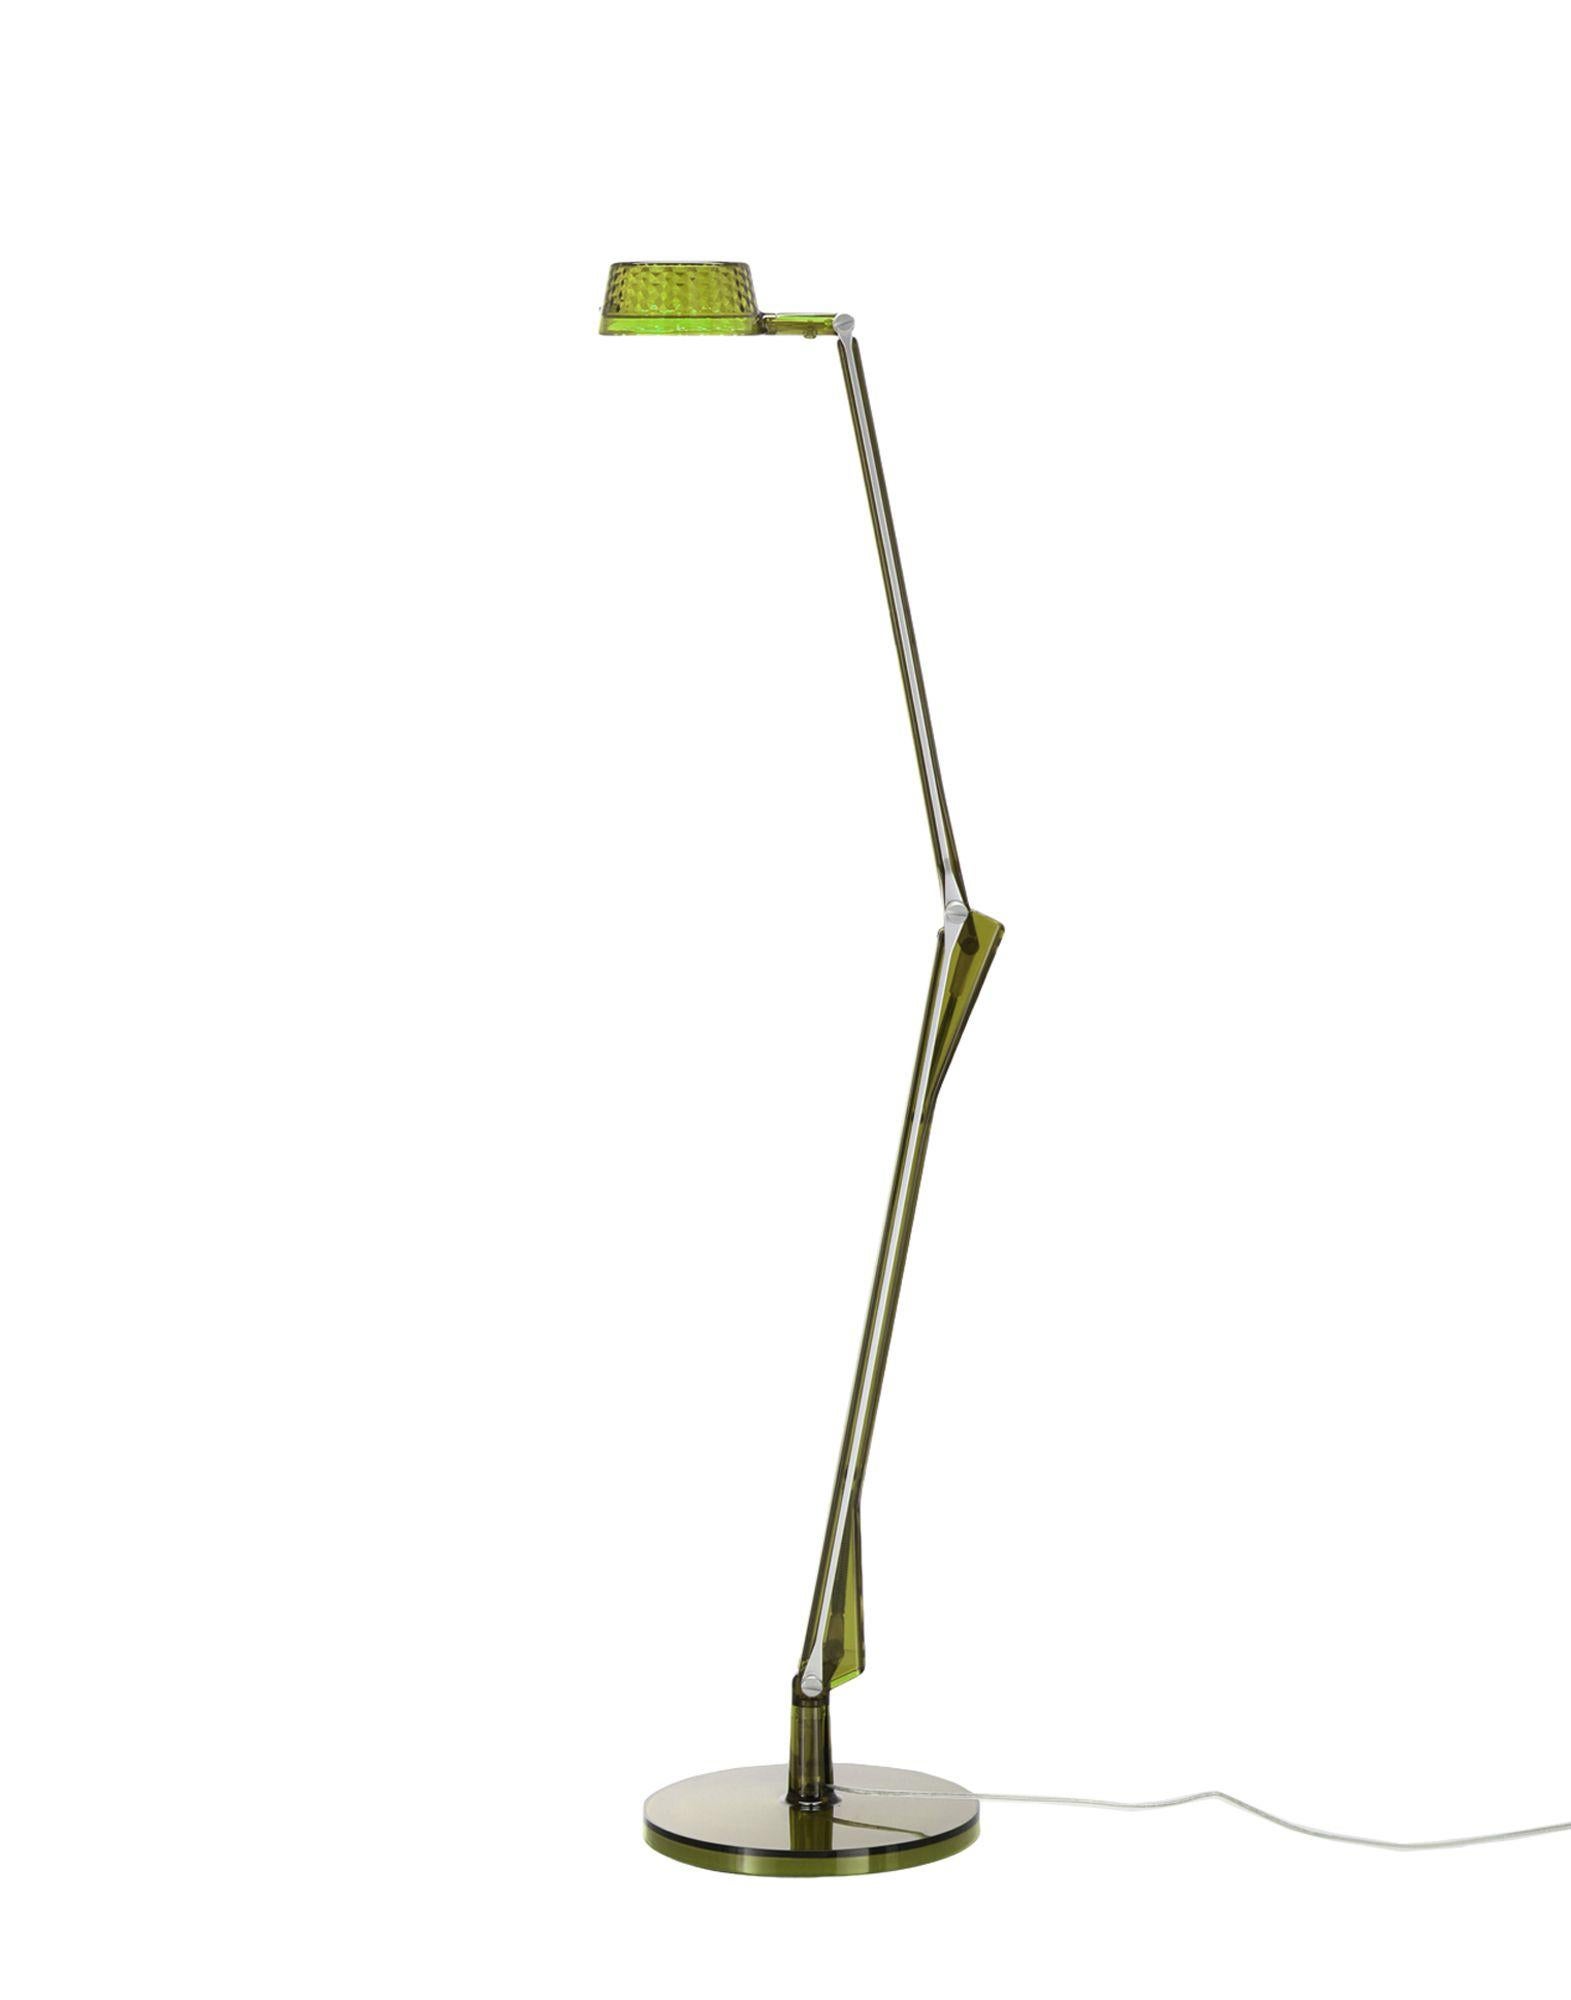 Modern Kartell Aledin Dec Desk Lamp in Green by Alberto e Francesco Meda For Sale